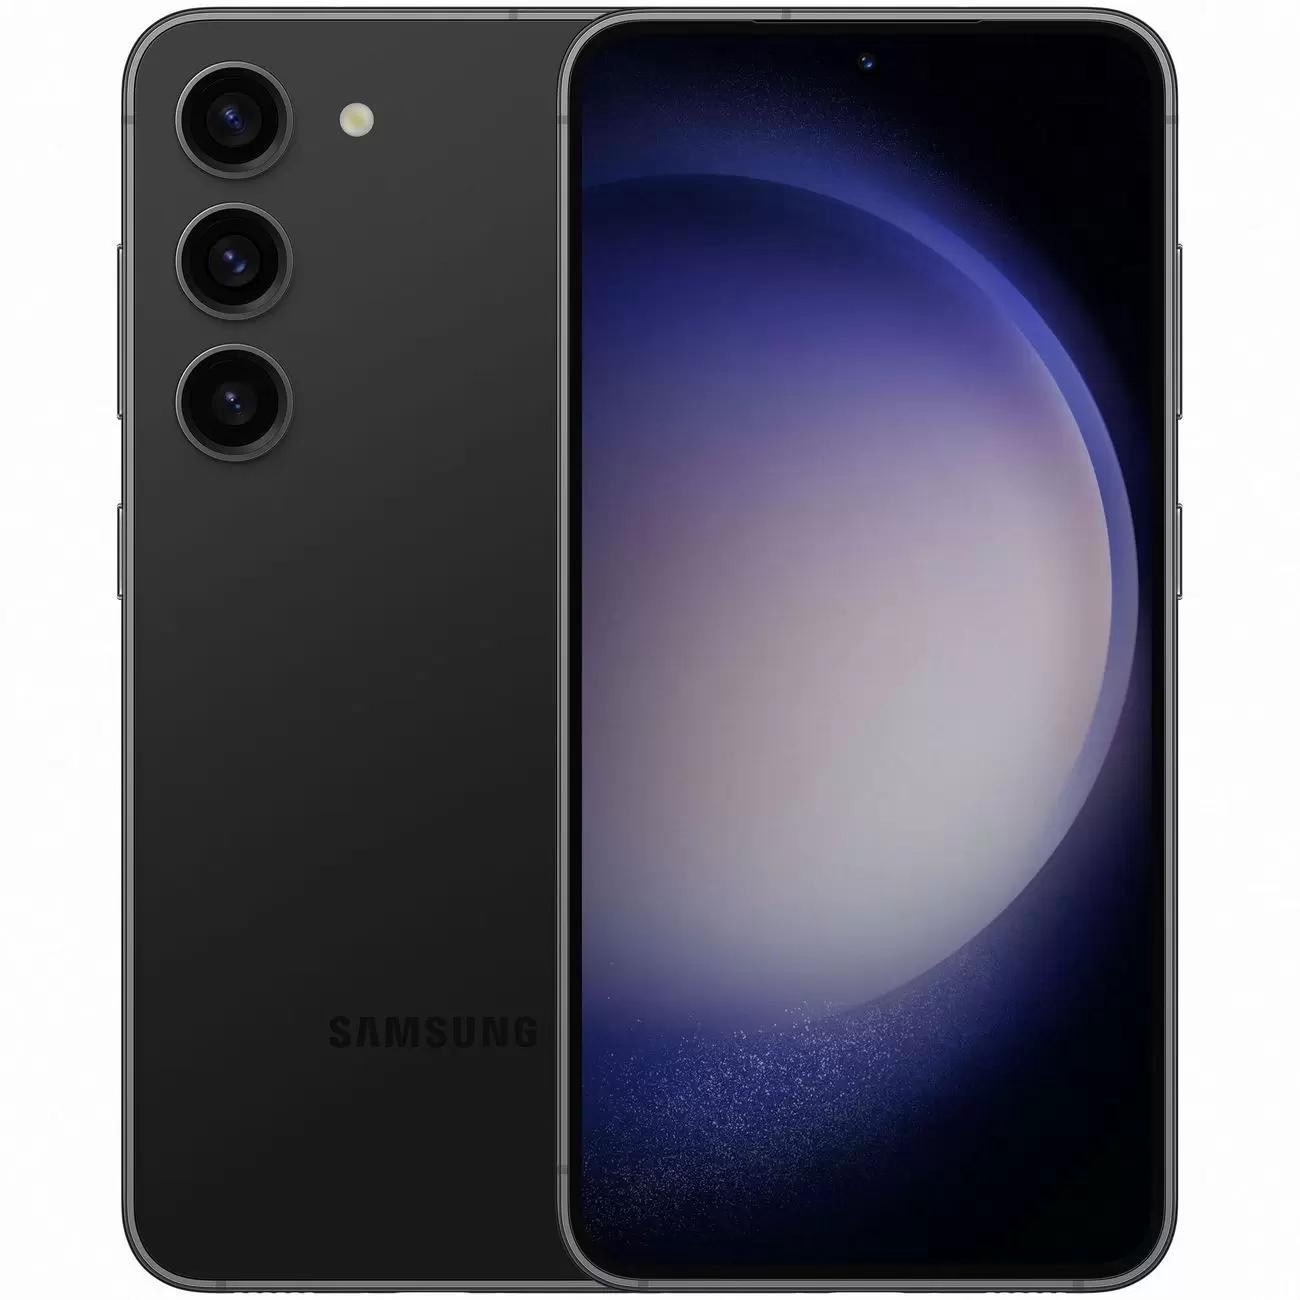 Купить смартфон samsung galaxy s23+ 8/256gb phantom black S-Серия в официальном магазине Apple, Samsung, Xiaomi. iPixel.ru Купить, заказ, кредит, рассрочка, отзывы,  характеристики, цена,  фотографии, в подарок.